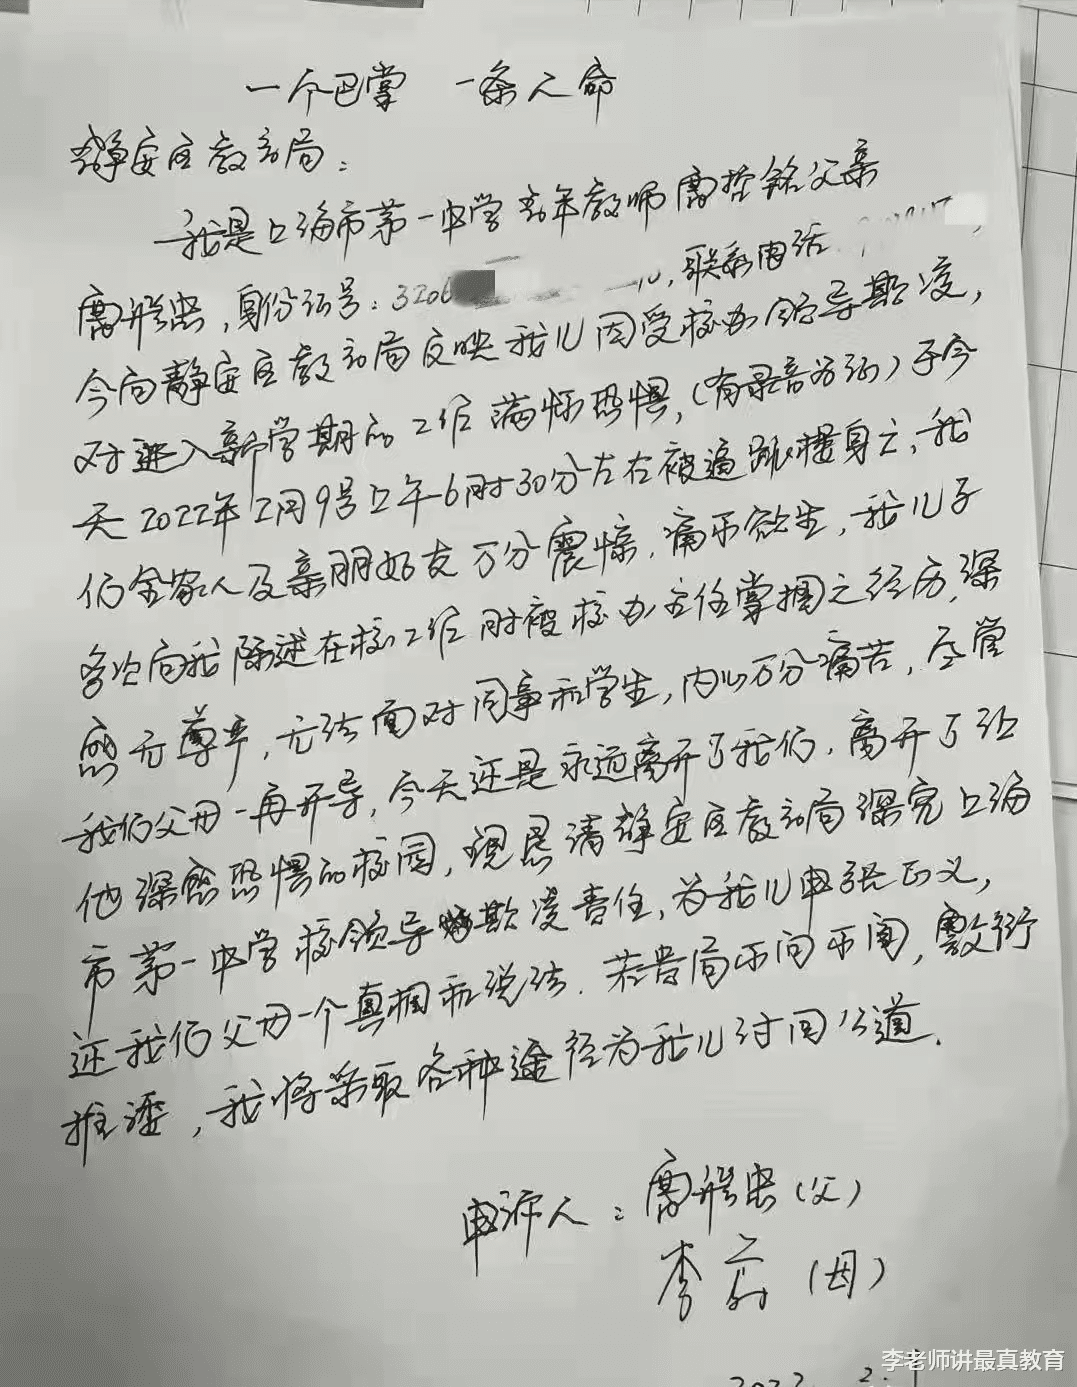 上海一老师被办公室主任掌掴后自杀, 网友质疑: 他为什么不狠狠的打回去?